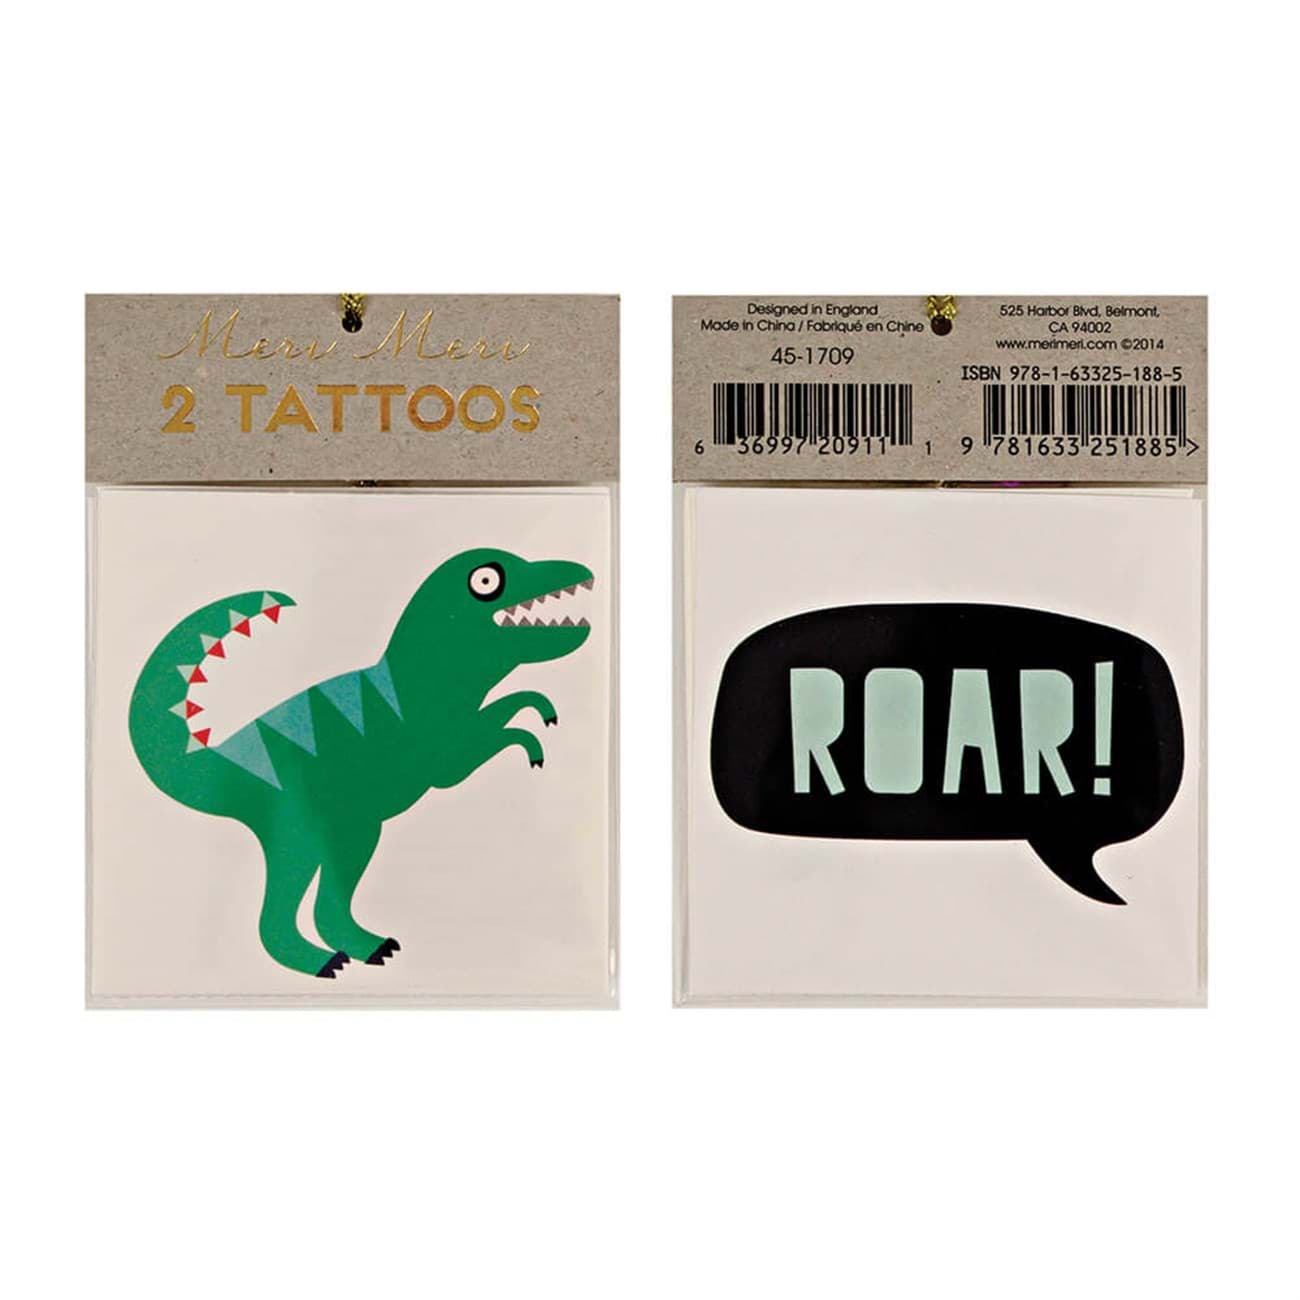 Dinozor Tattoos resmi